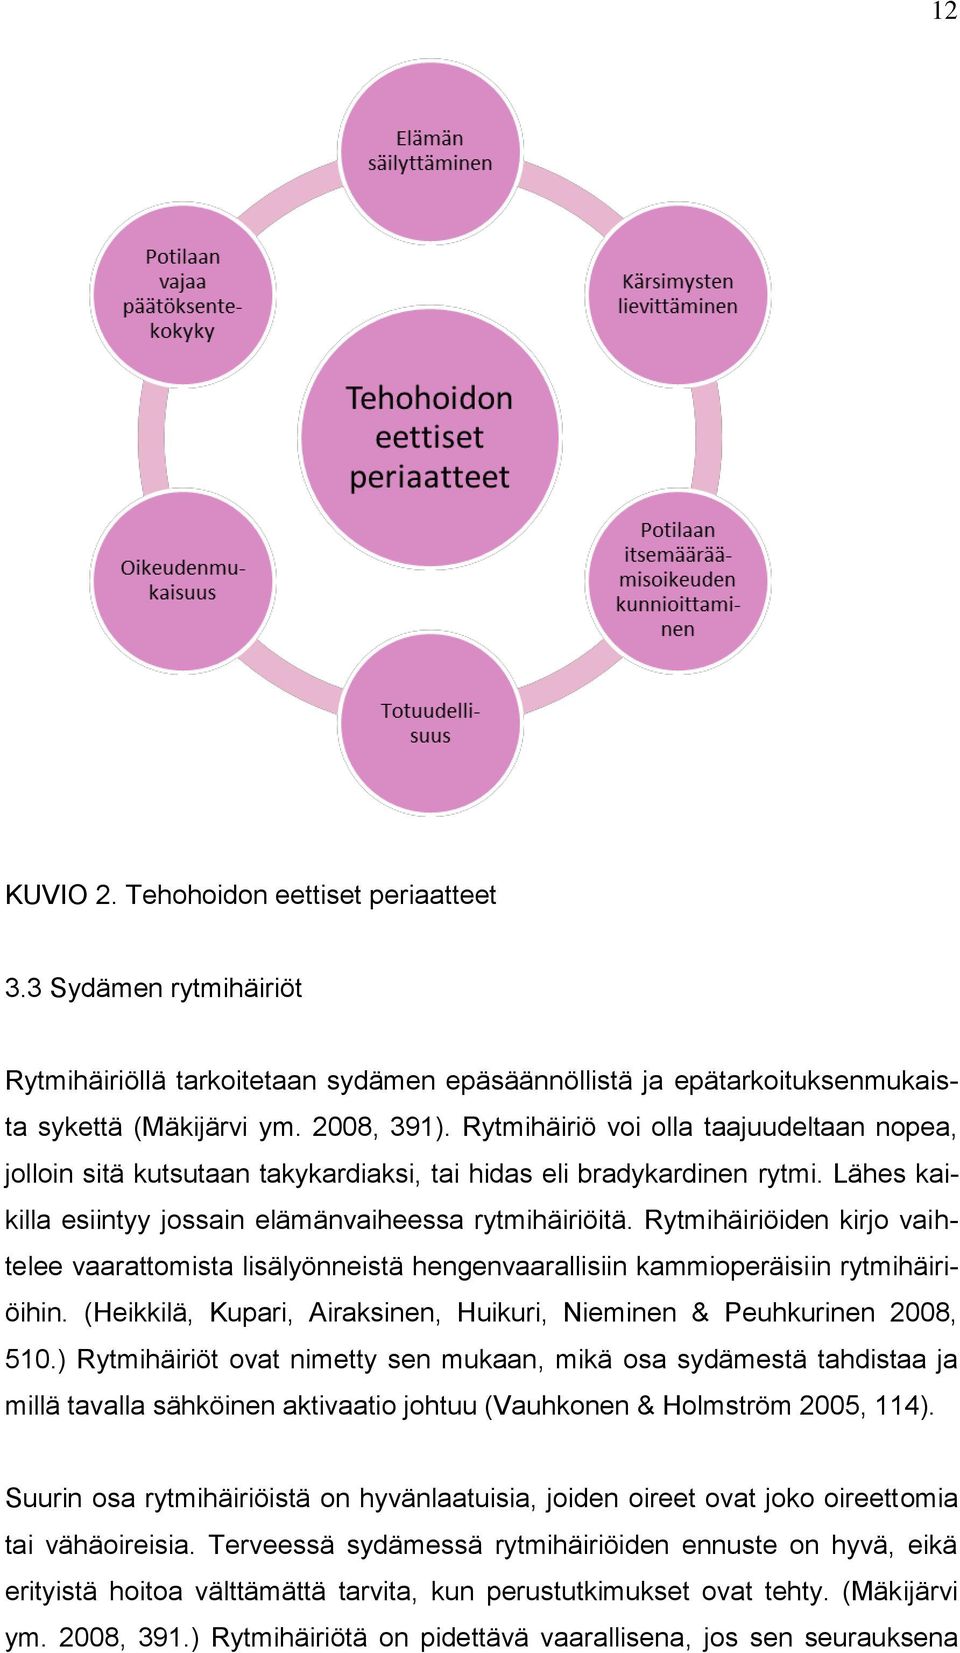 Rytmihäiriöiden kirjo vaihtelee vaarattomista lisälyönneistä hengenvaarallisiin kammioperäisiin rytmihäiriöihin. (Heikkilä, Kupari, Airaksinen, Huikuri, Nieminen & Peuhkurinen 2008, 510.